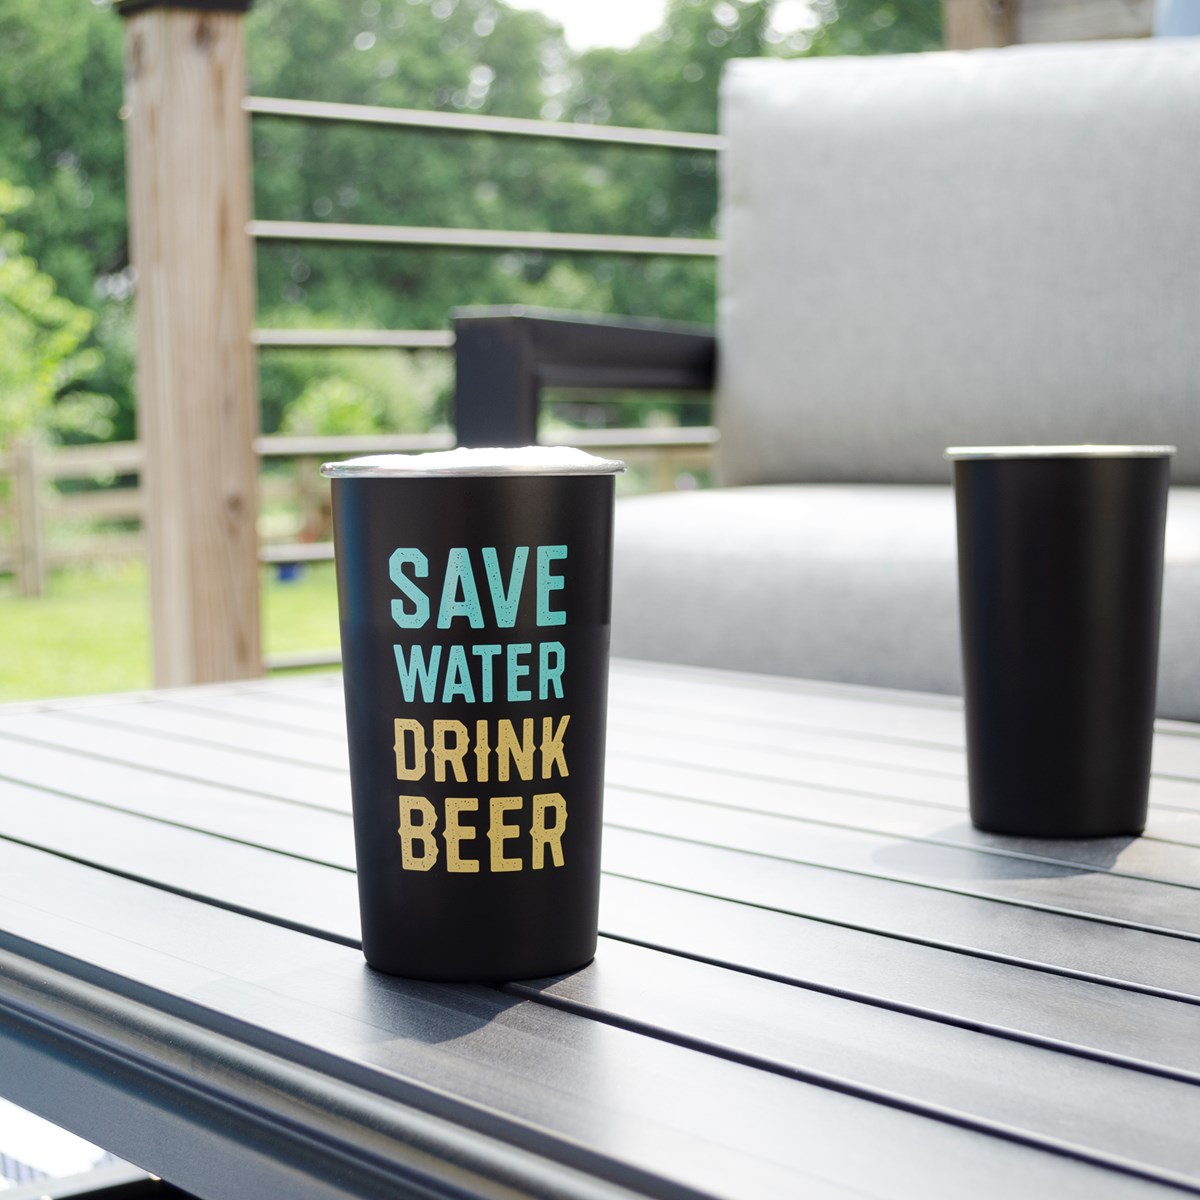 Save Water Drink Beer Tumbler - Stainless Steel